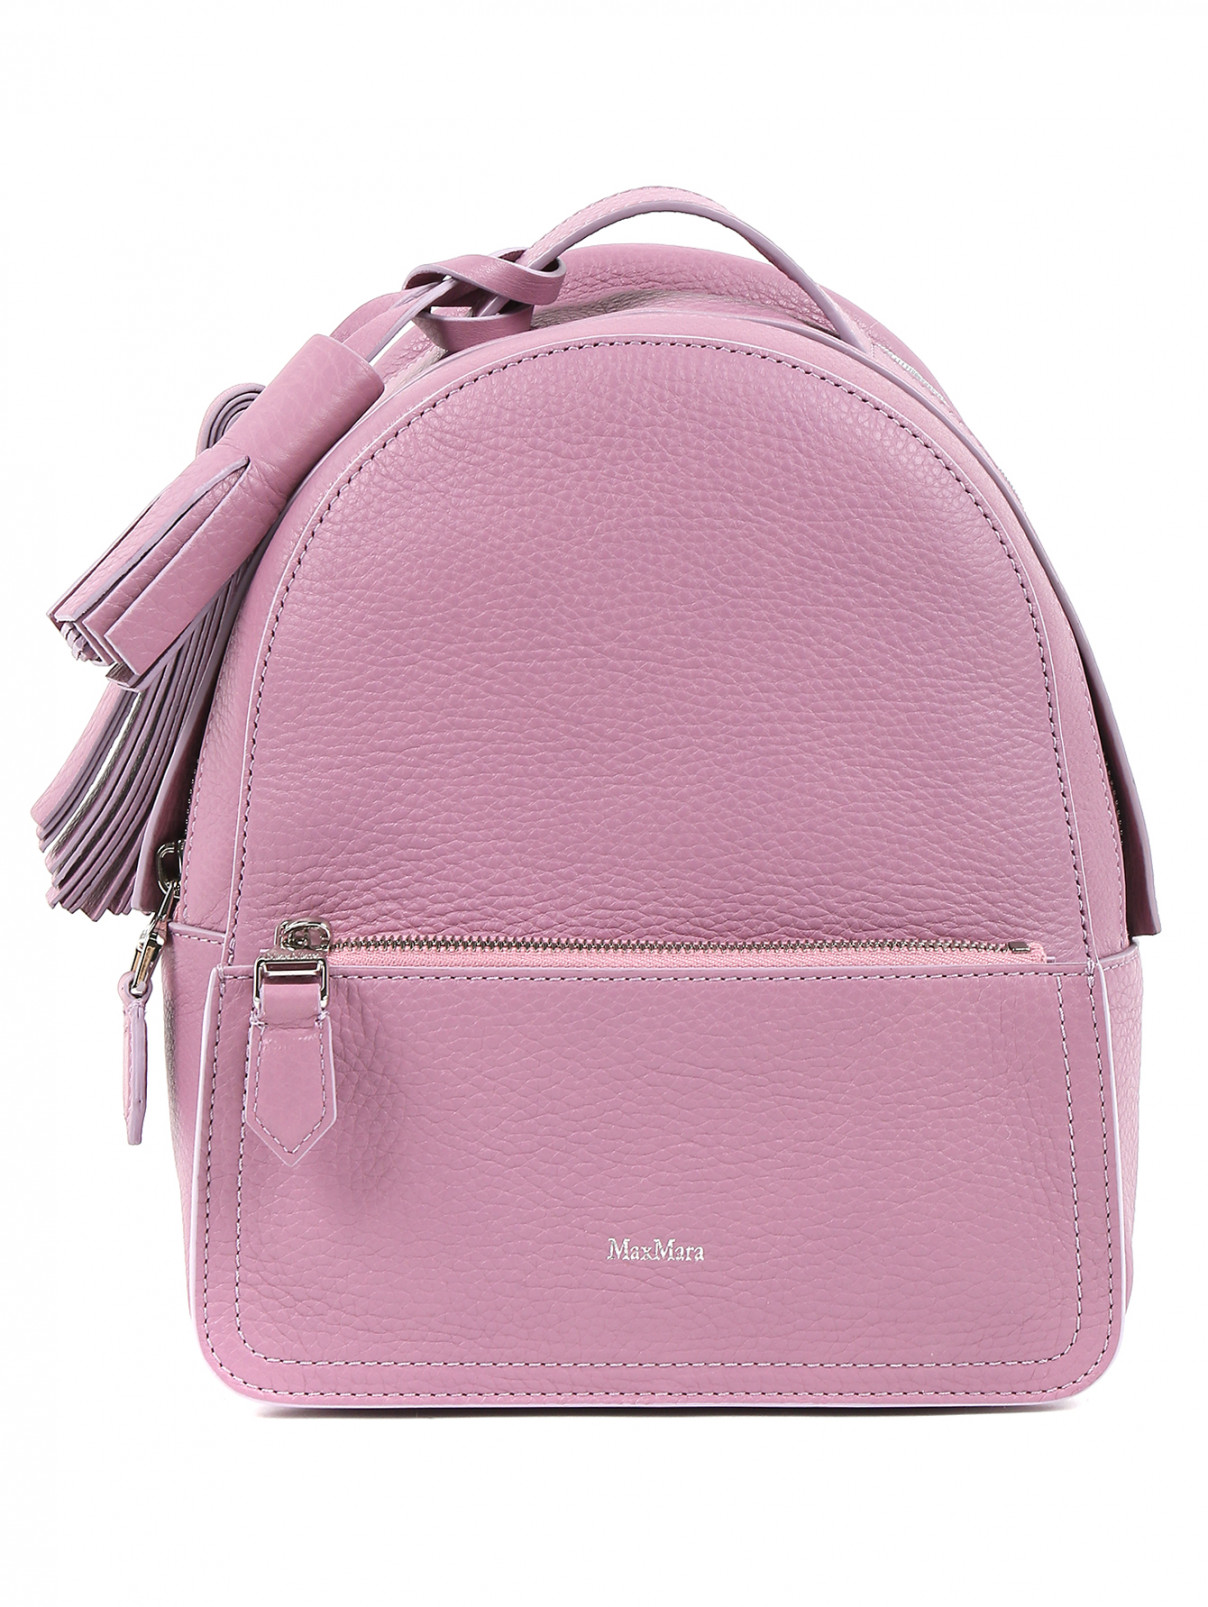 Рюкзак из кожи и текстиля Max Mara  –  Общий вид  – Цвет:  Фиолетовый